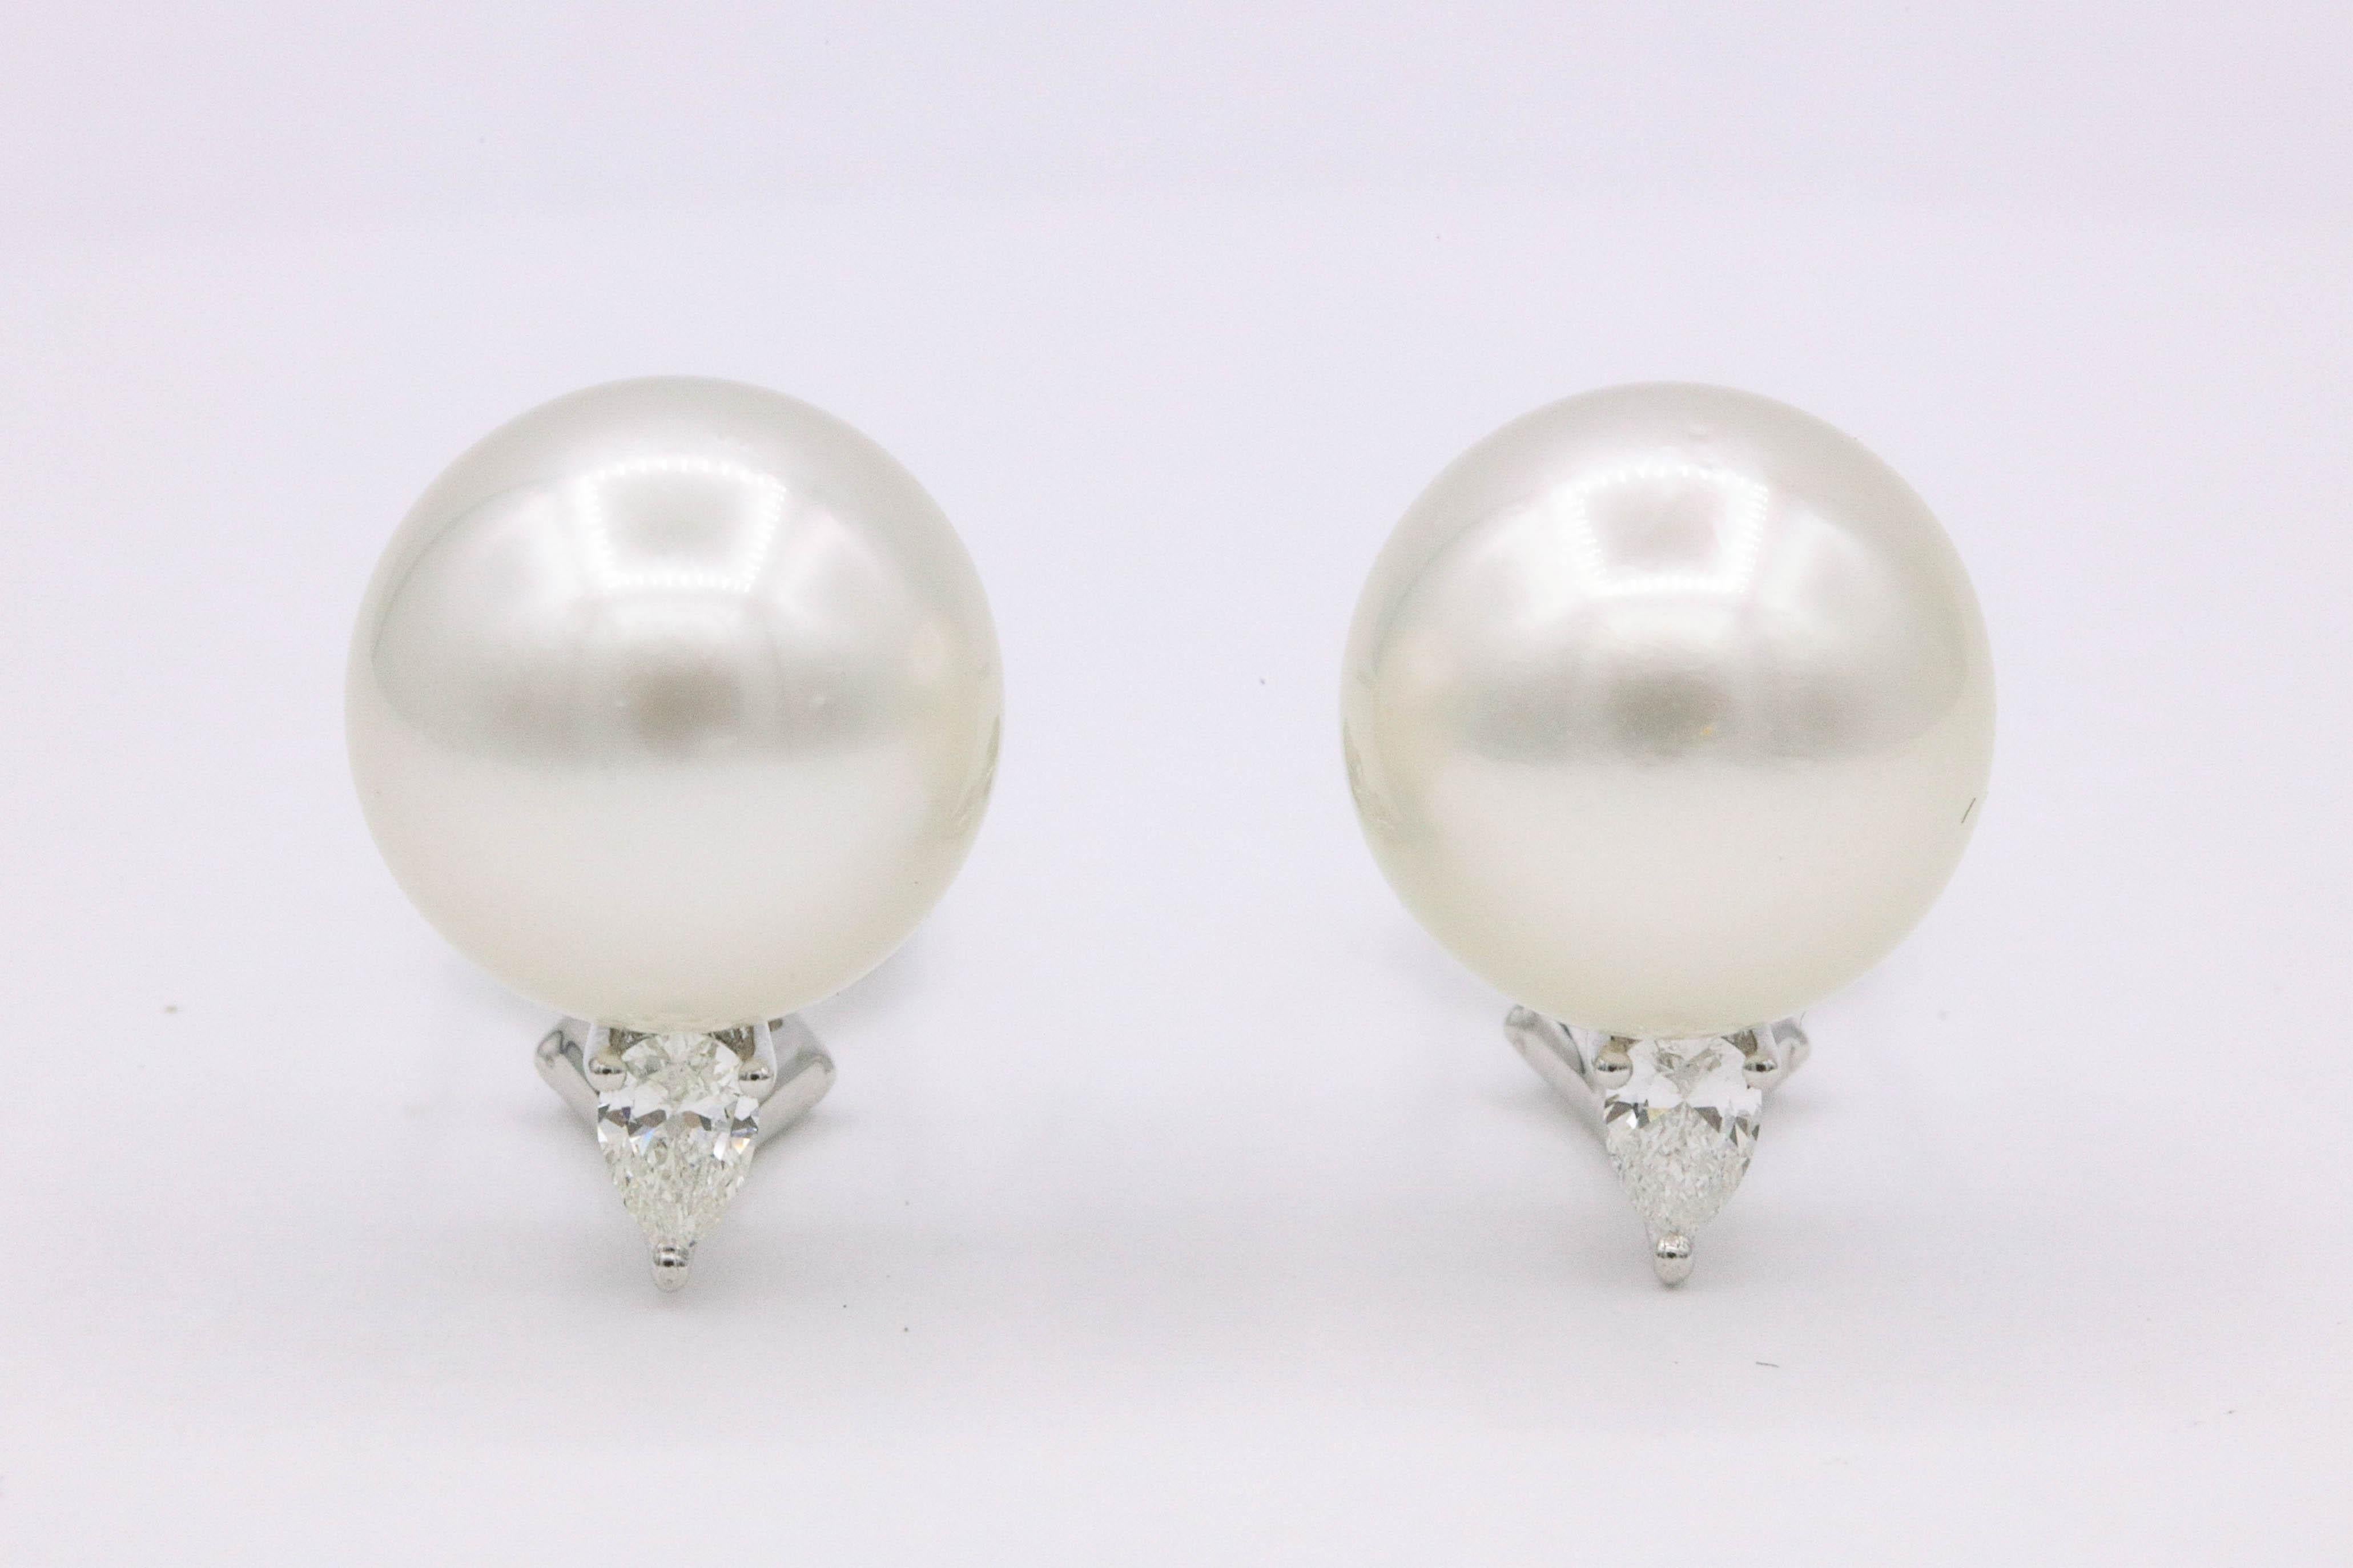 Südseeperlen-Ohrringe mit zwei birnenförmigen Diamanten mit einem Gewicht von 0,38 Karat, aus 18 Karat Weißgold.
Südseeperle: 13-14 mm
Farbe G-H
Klarheit SI